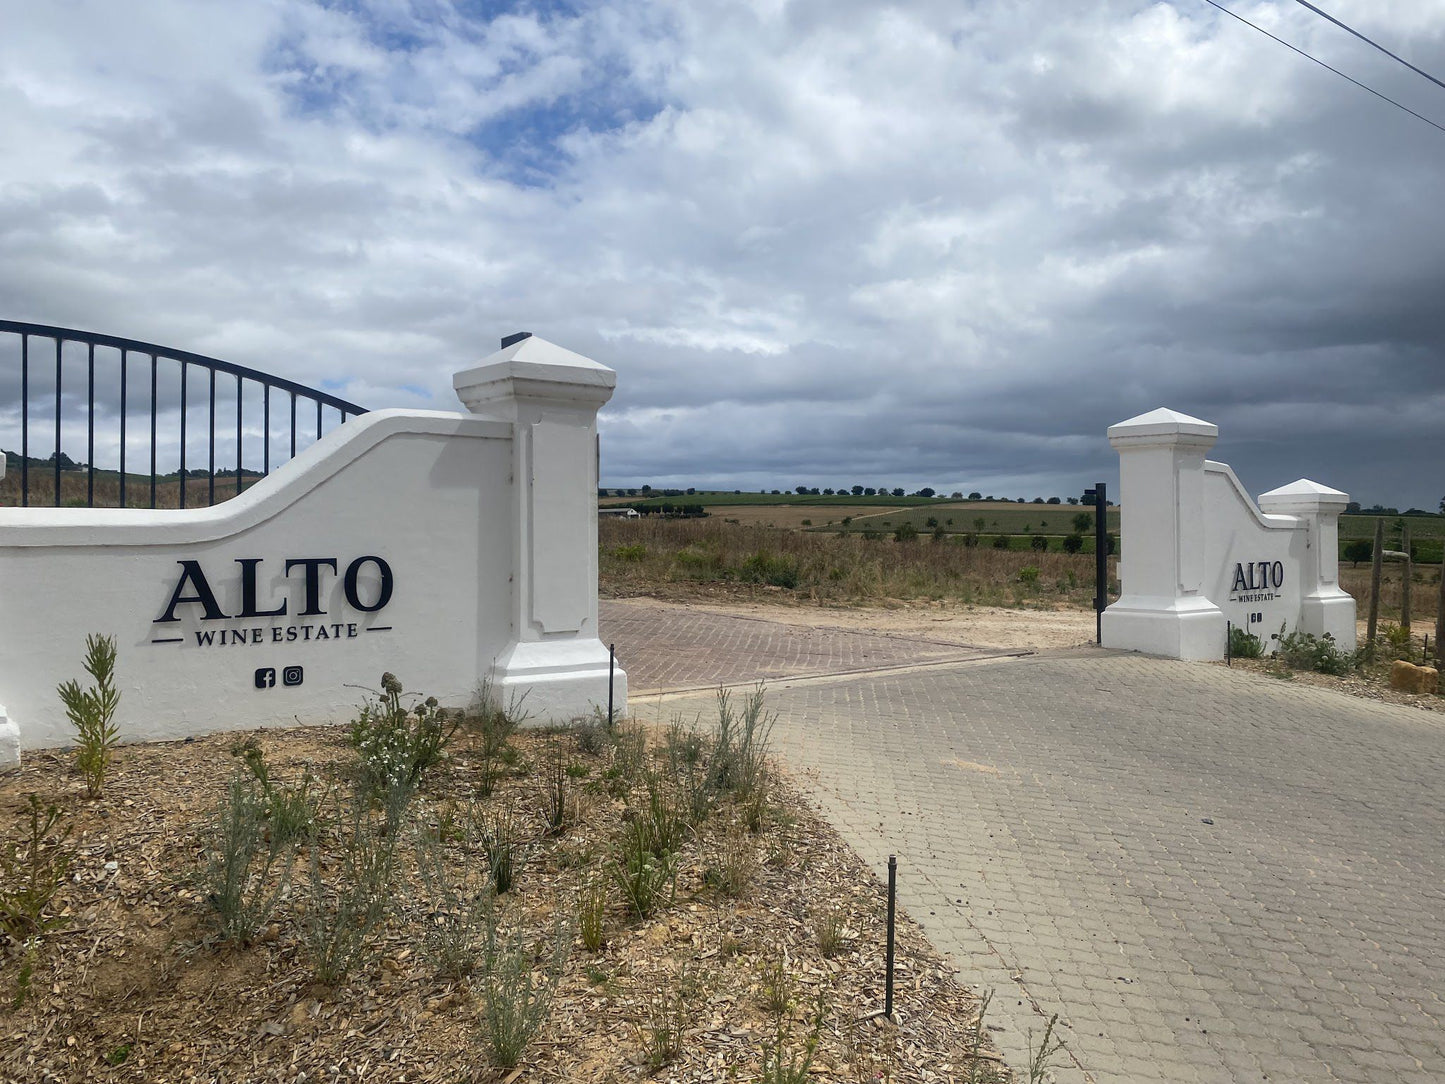  Alto Wine Estate